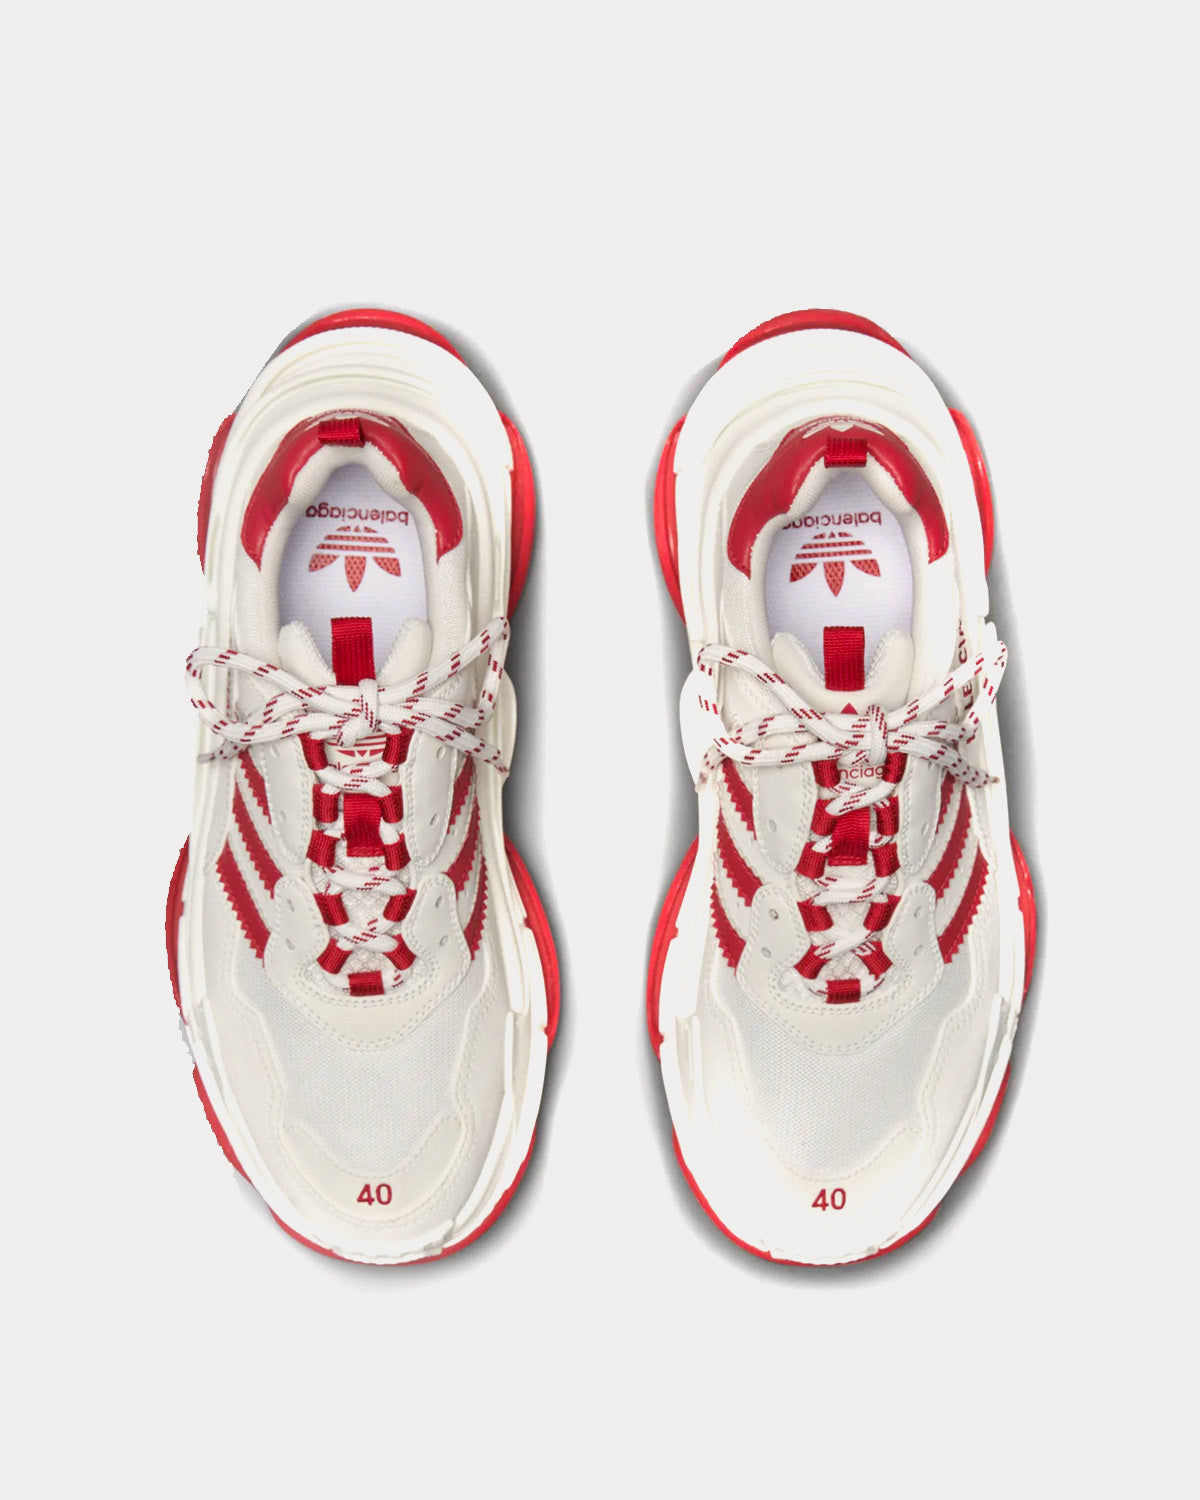 Balenciaga x Adidas - Triple S White / White / Red Low Top Sneakers